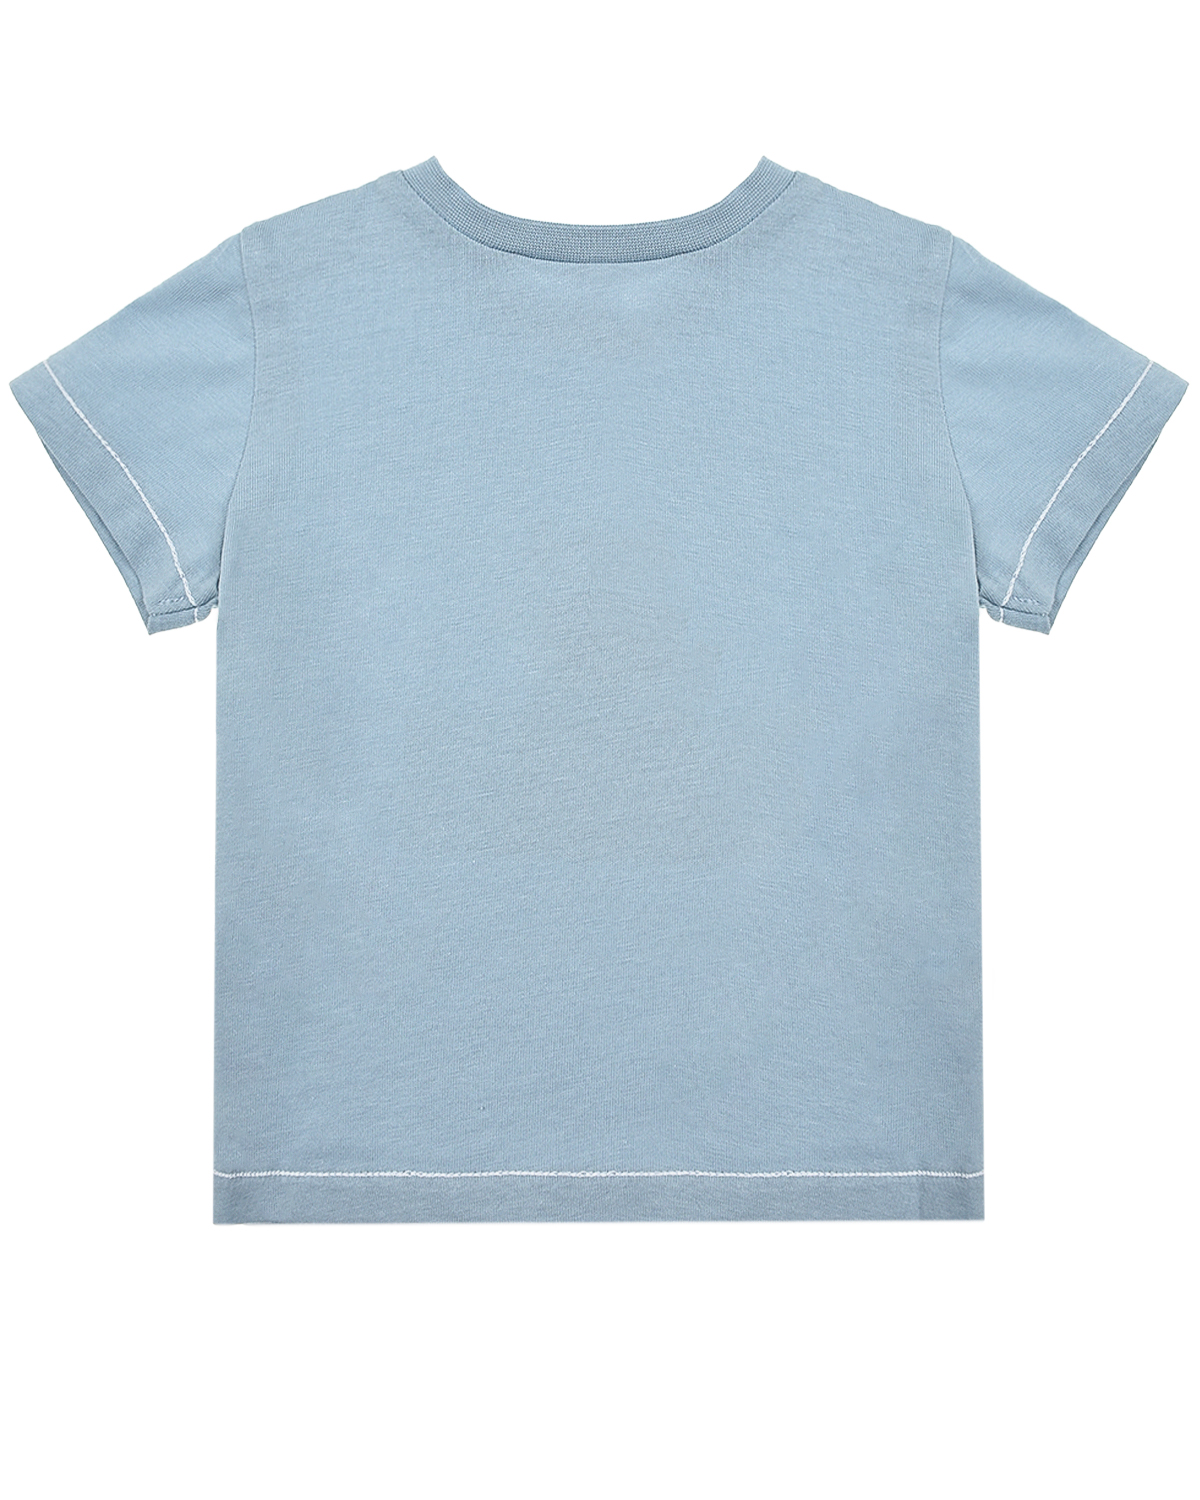 Голубая футболка с принтом "водолаз" Tartine et Chocolat детская, размер 74, цвет голубой - фото 2